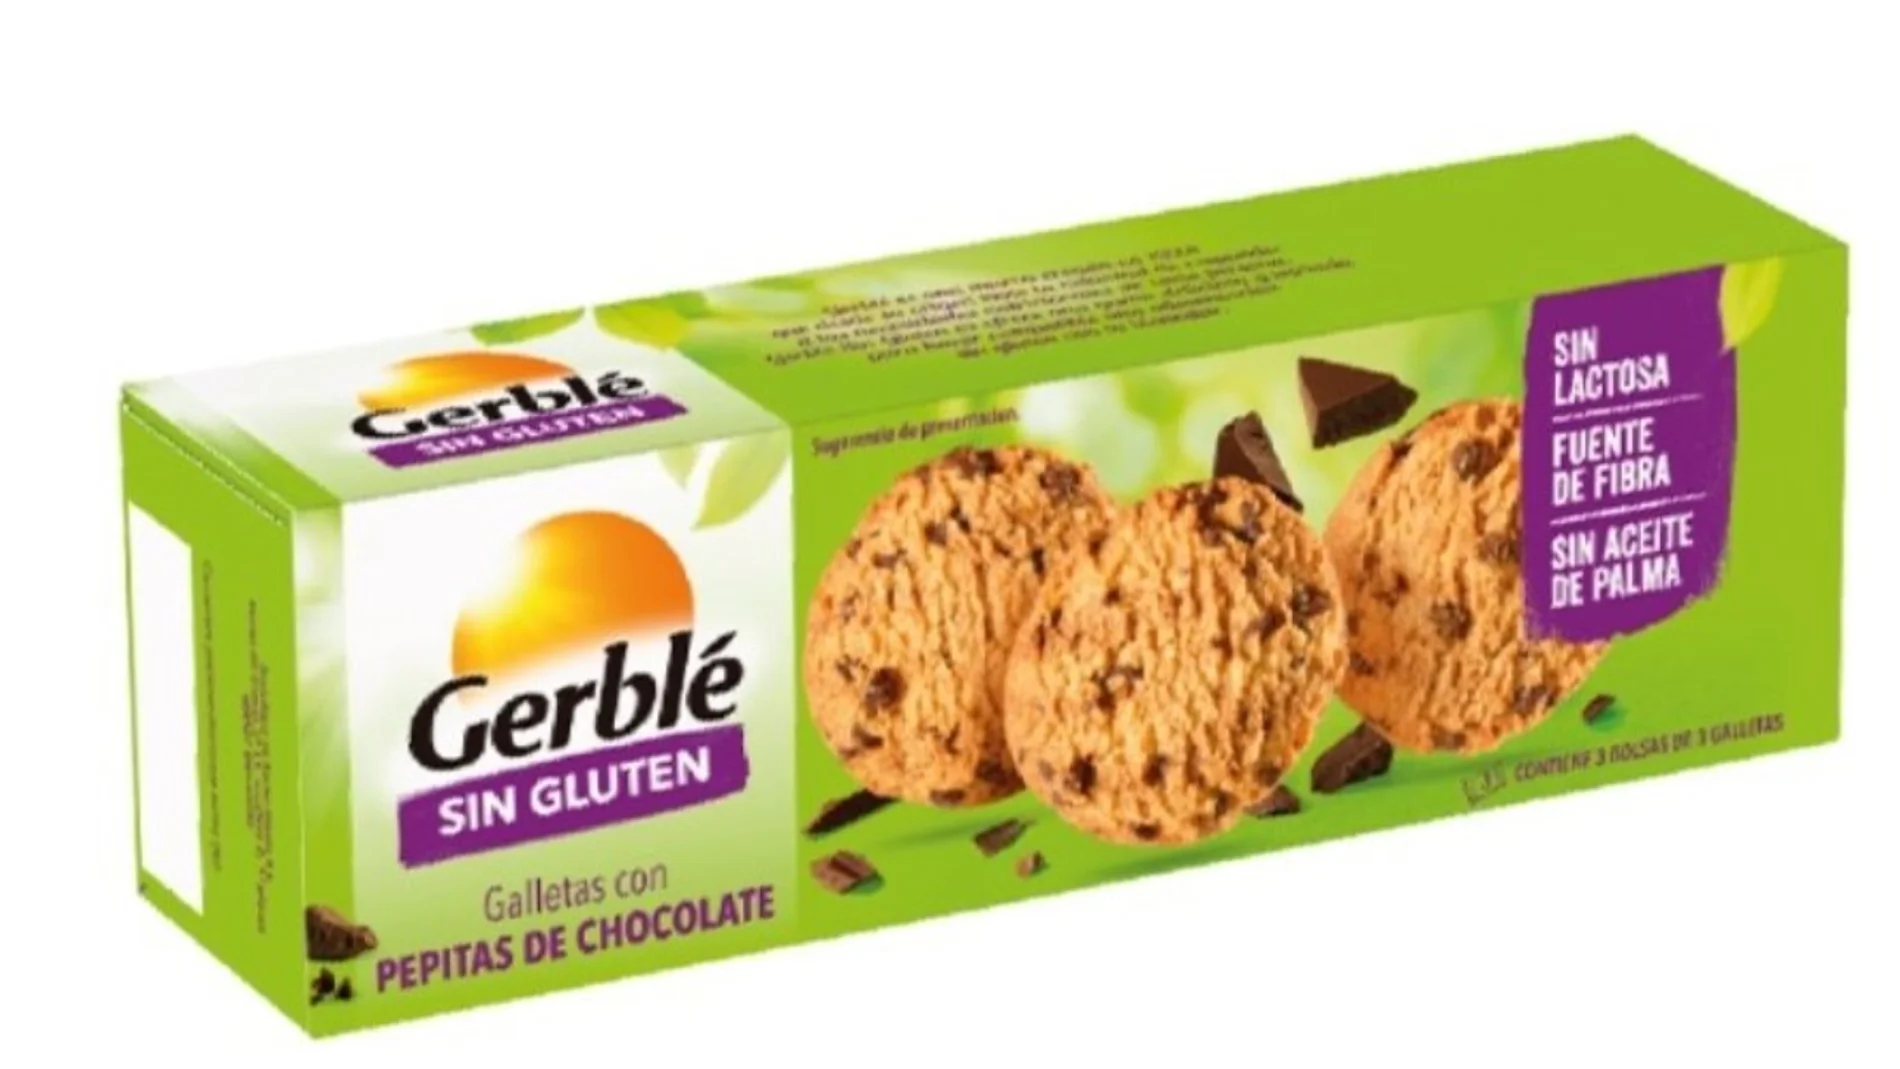 Retiradas unas galletas de chocolate por contener burundanga: el lote fue repartido por toda España